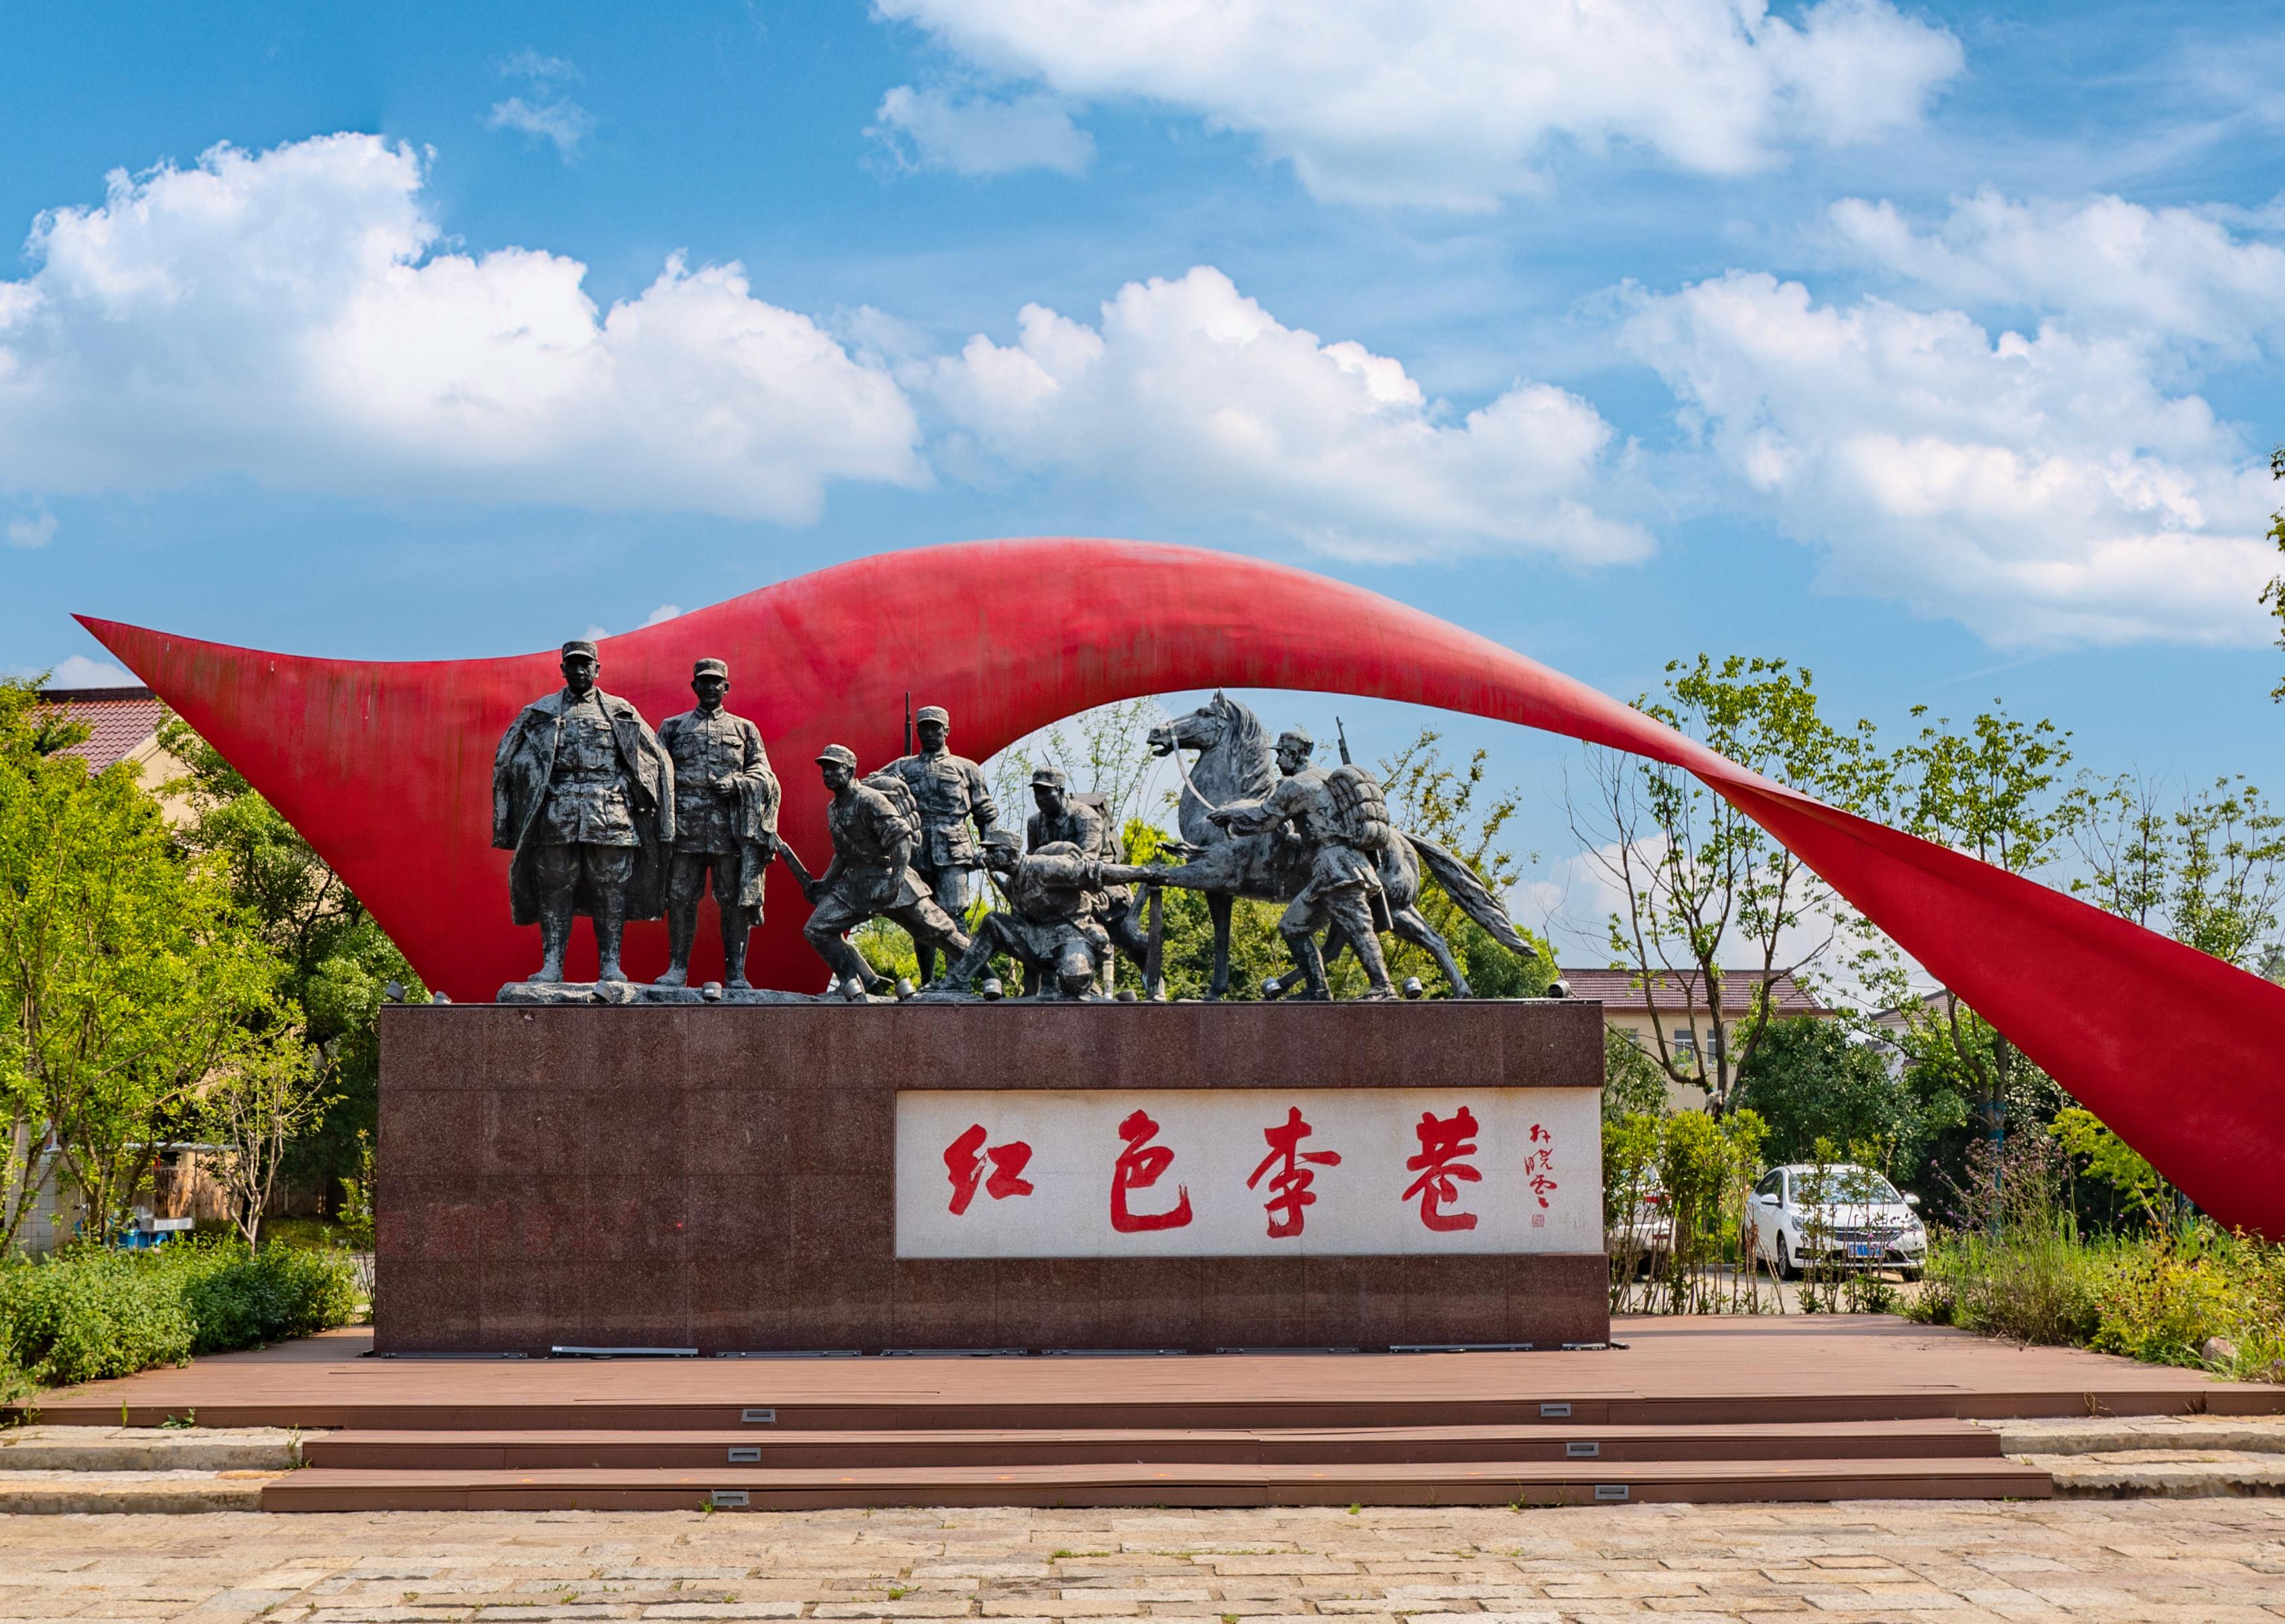 传承红色基因 福建推出百条红色旅游线路 - 省内 - 东南网旅游频道